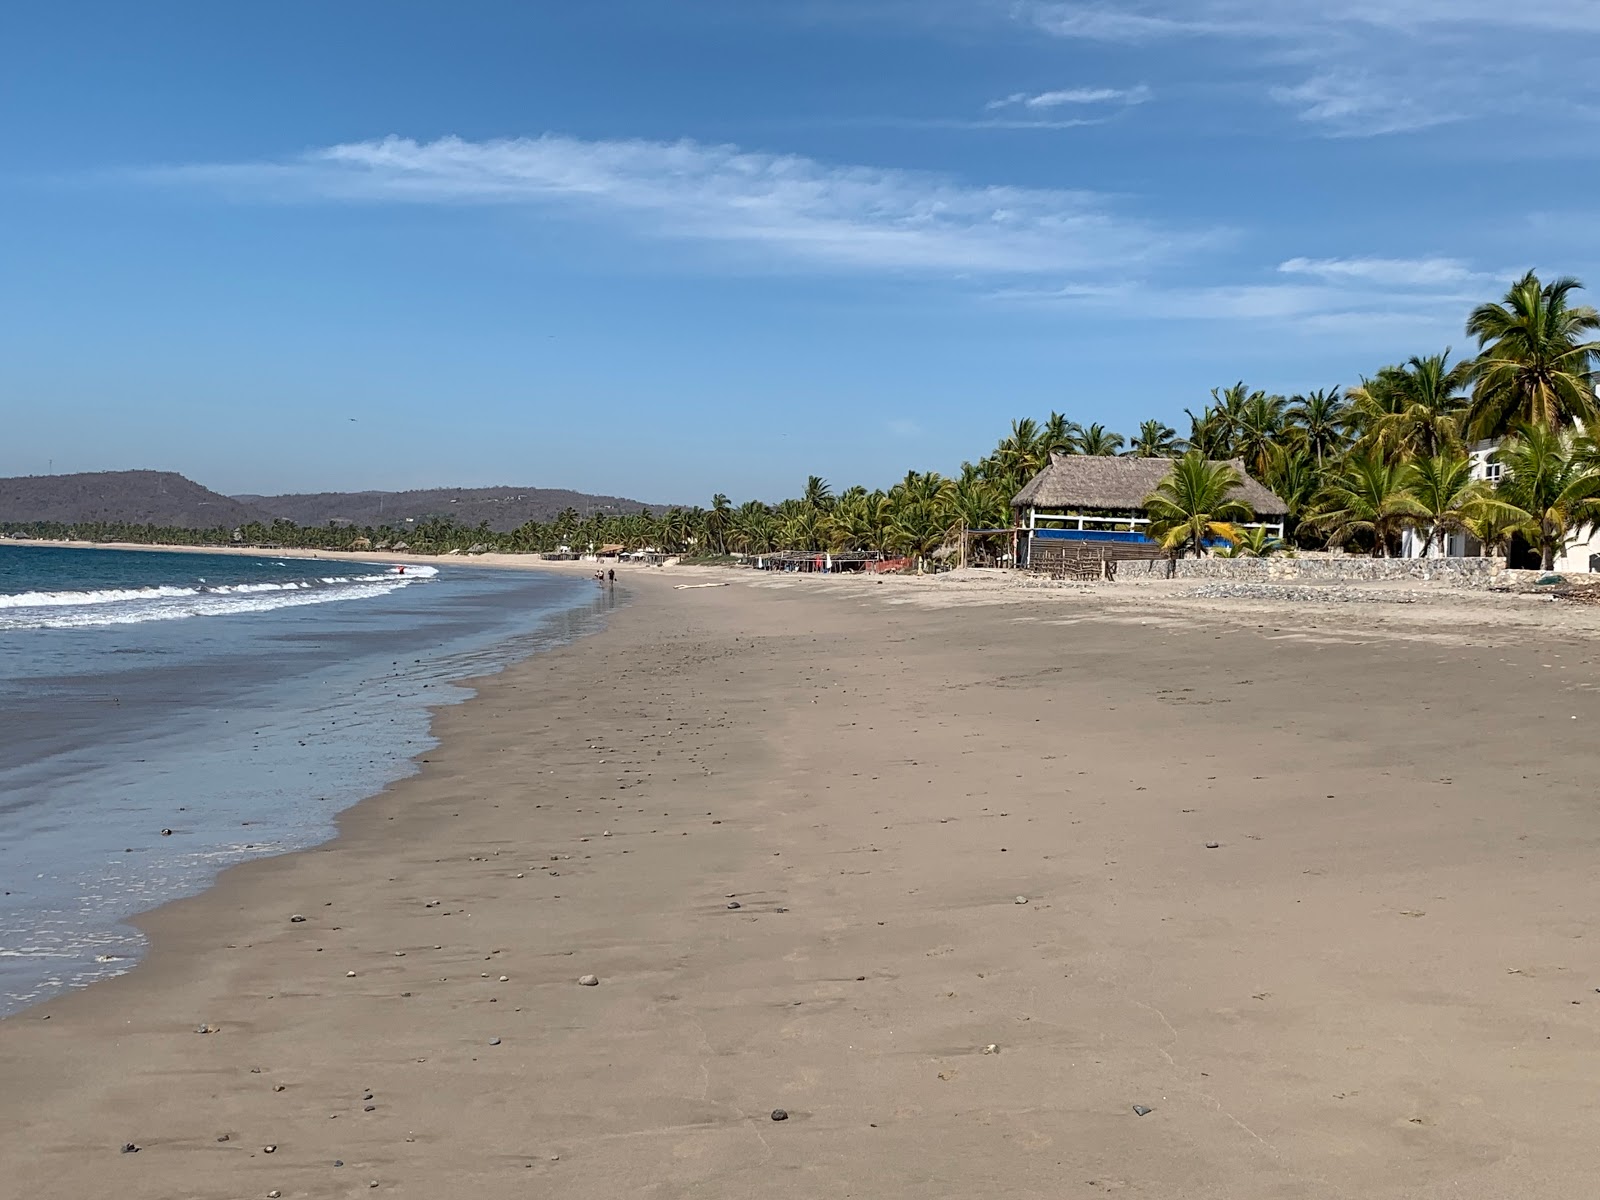 Playa La Manzanilla'in fotoğrafı i̇nce kahverengi kum yüzey ile